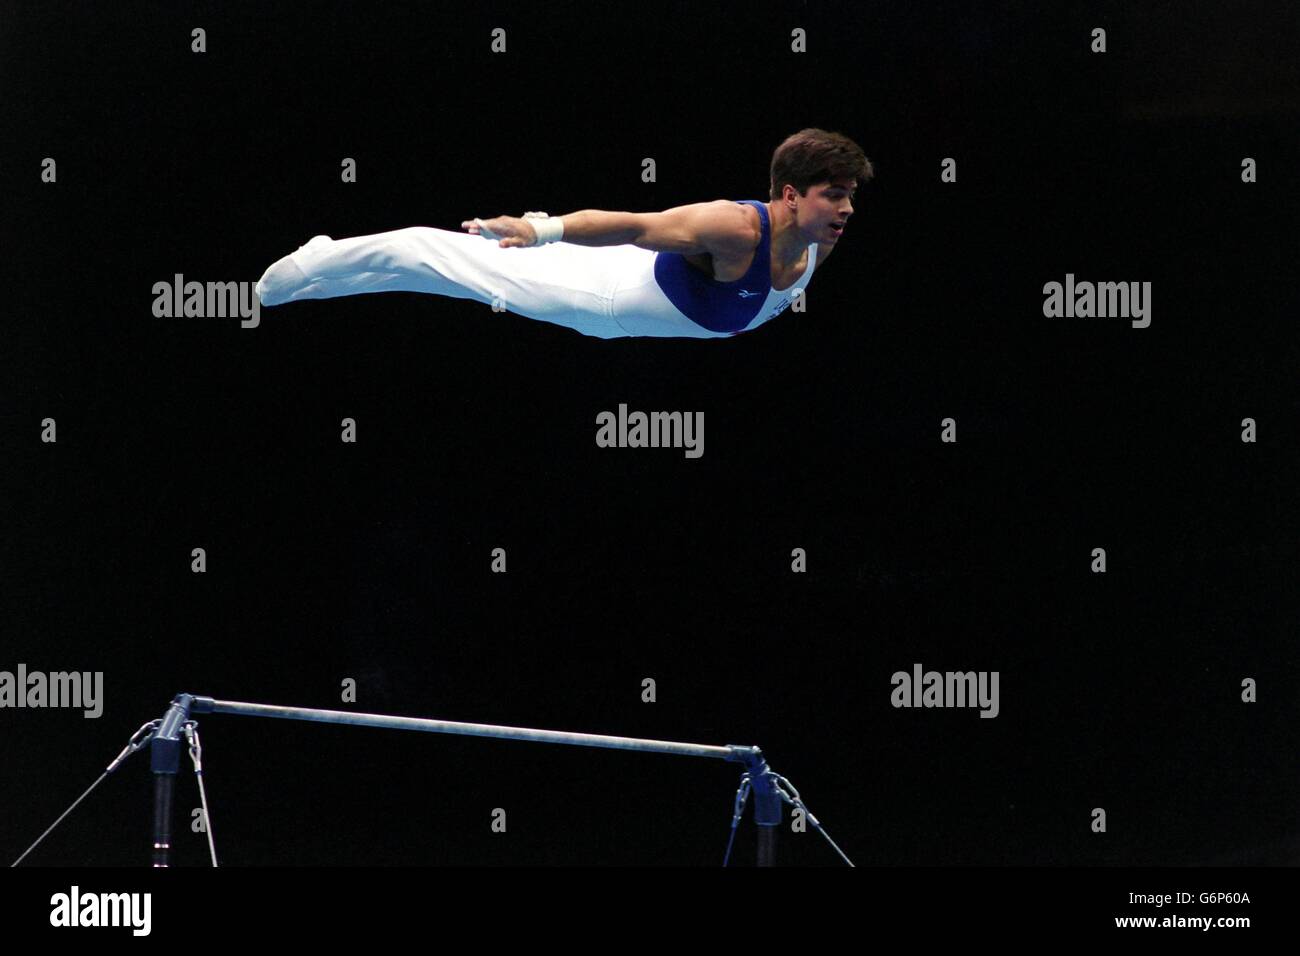 Atlanta Olympic Games - Gymnastics - Artistic. Kip Simons, USA dismounts the high bar Stock Photo